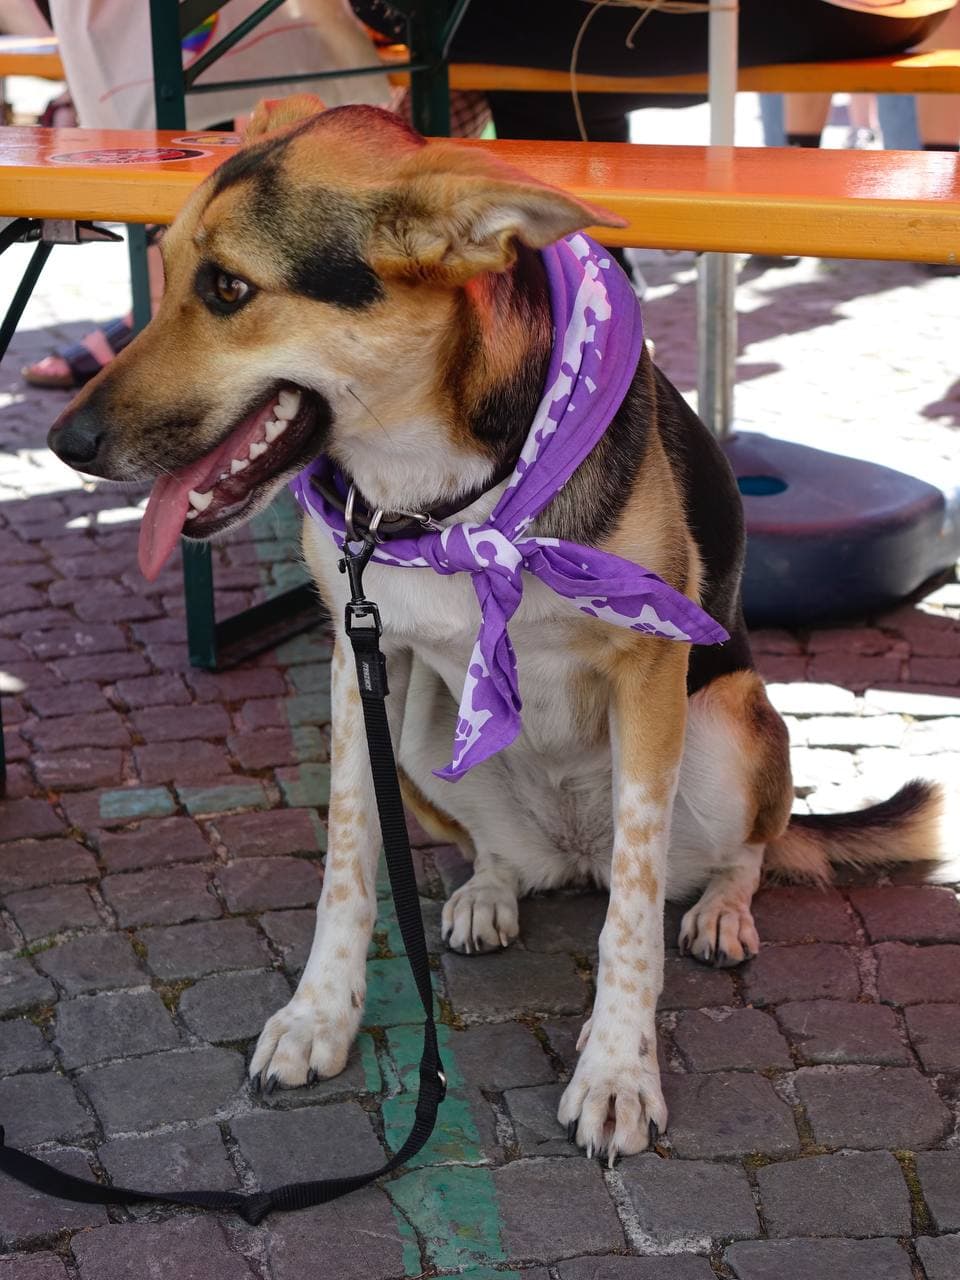 Ein Hund sitzt im Schatten neben Festbänken und hächelt, er hat ein violettes Halstuch umgebunden